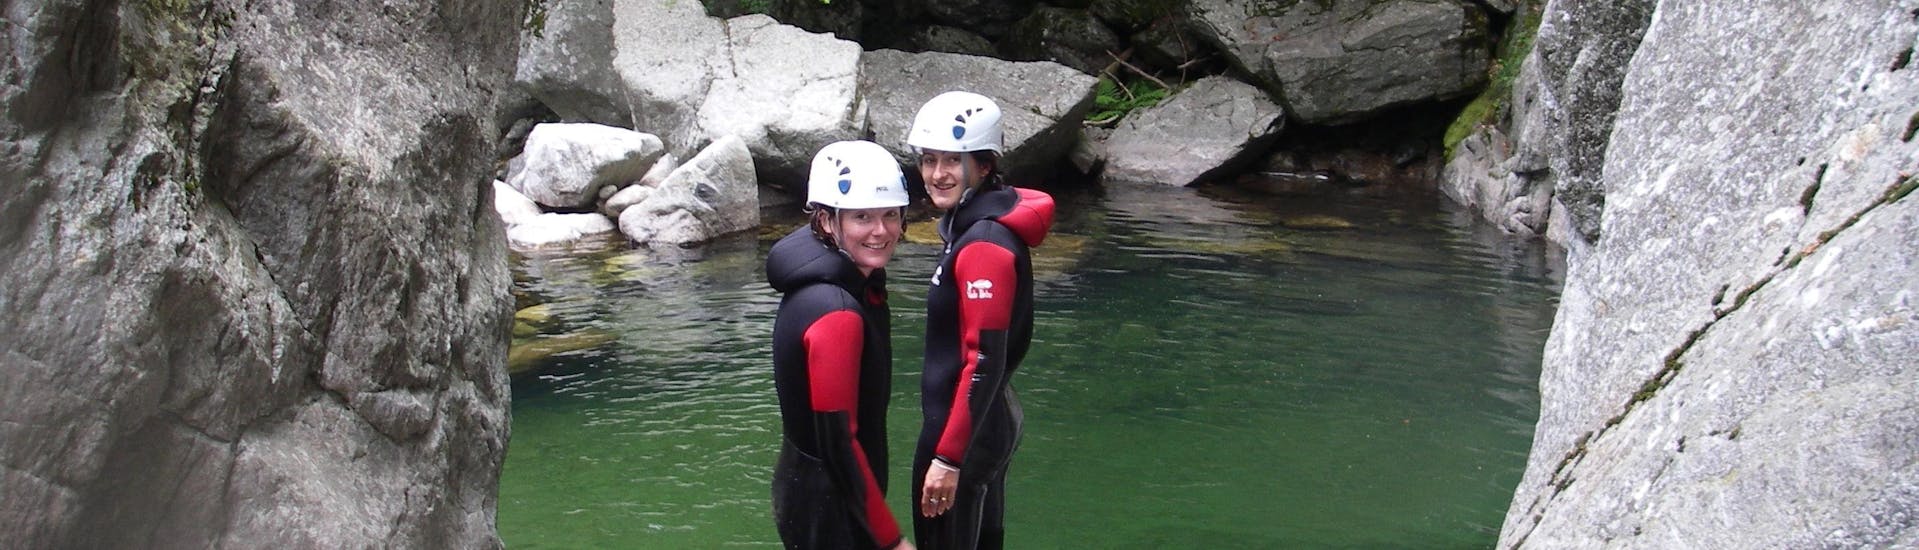 Deux amis se préparent à sauter dans une piscine émeraude lors de leur descente en Canyoning dans le canyon de la Borne - Aquatique avec Geo Ardèche Canyon.